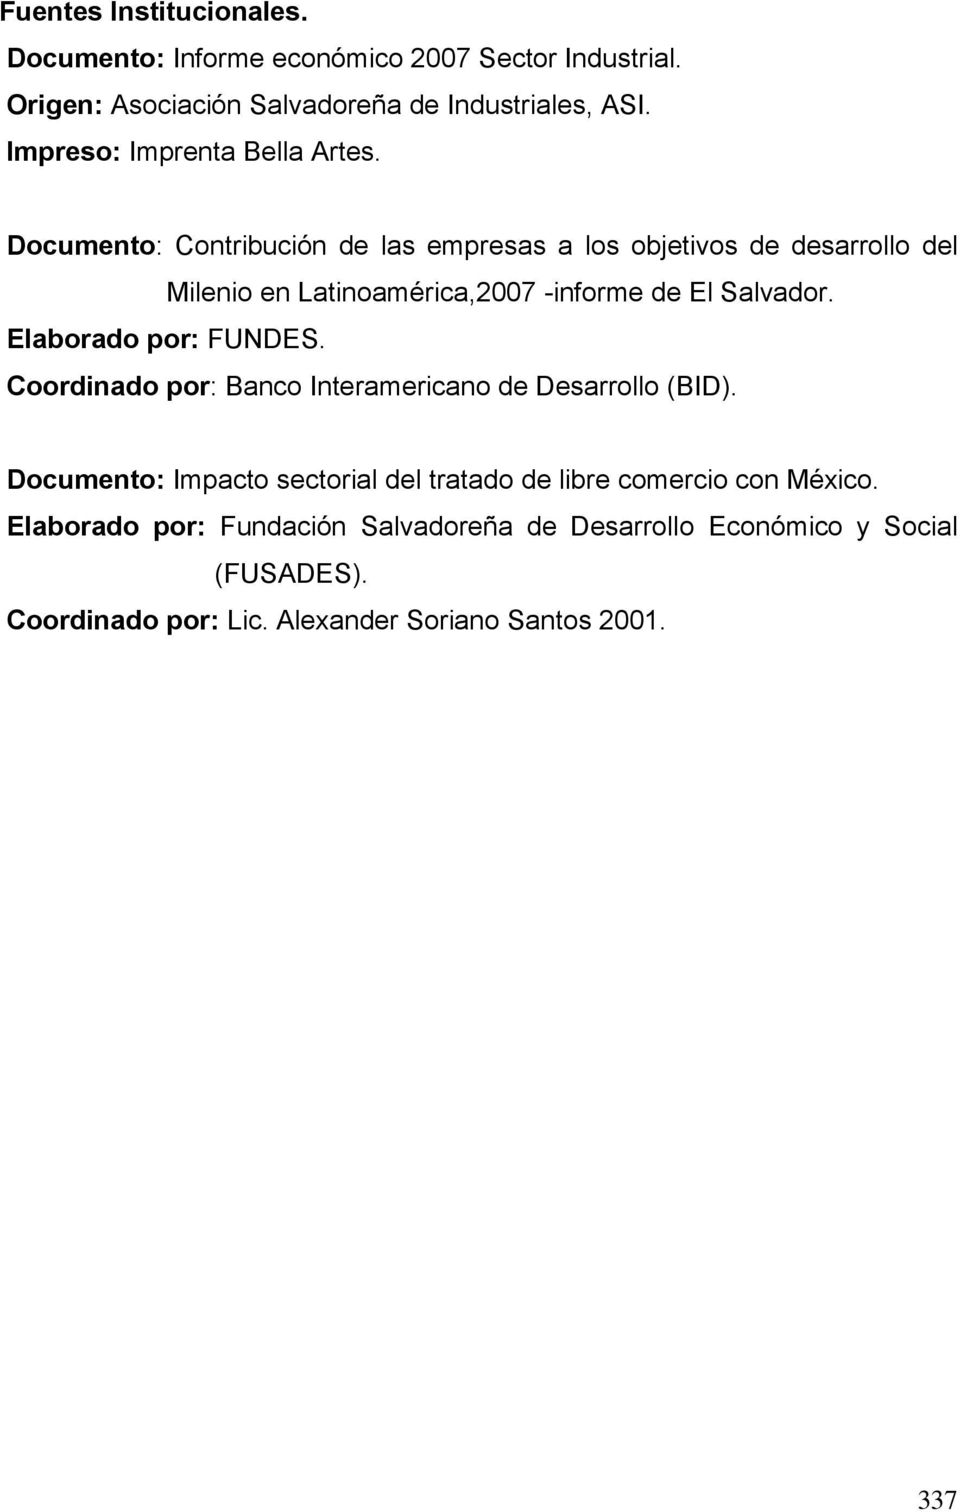 Documento: Contribución de las empresas a los objetivos de desarrollo del Milenio en Latinoamérica,2007 -informe de El Salvador.